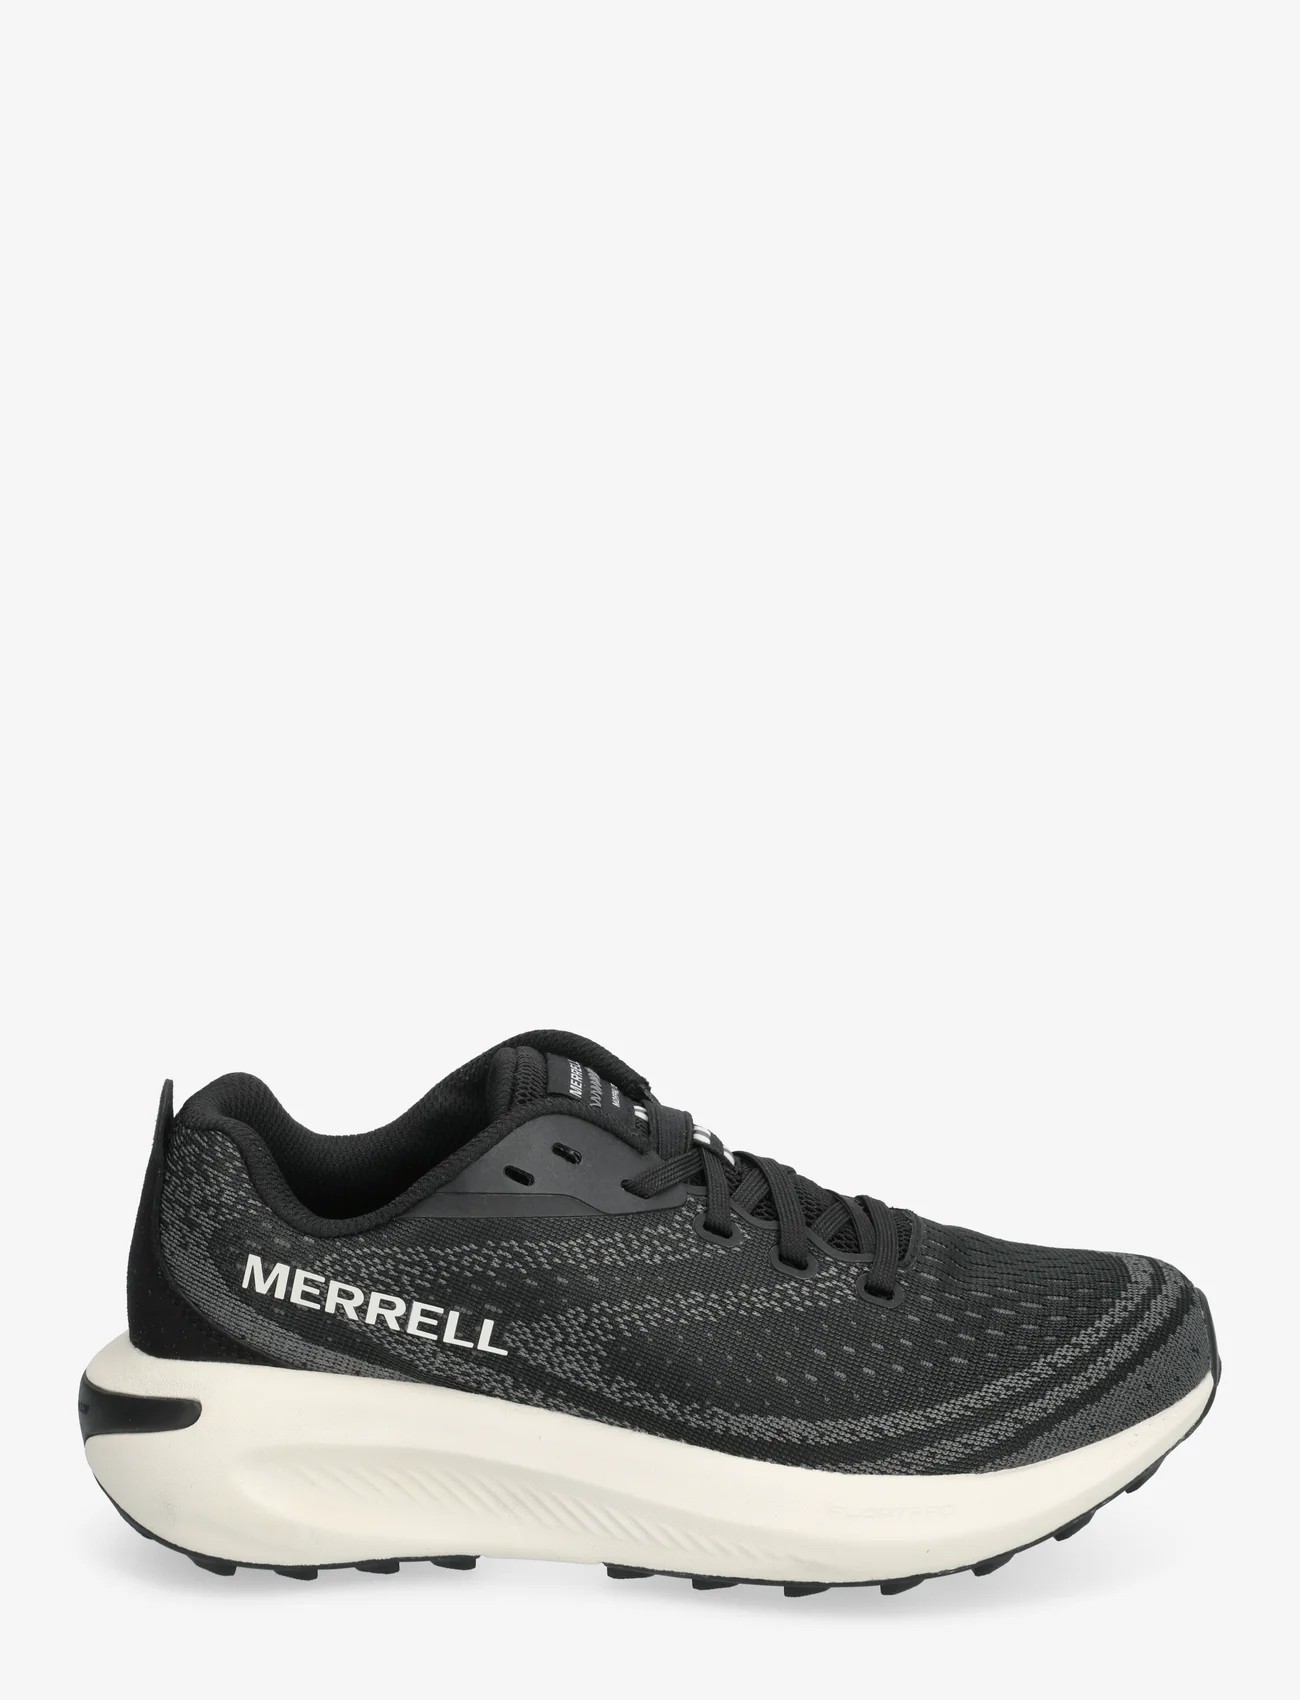 Merrell - Women's Morphlite - Black/White - running shoes - black/white - 1